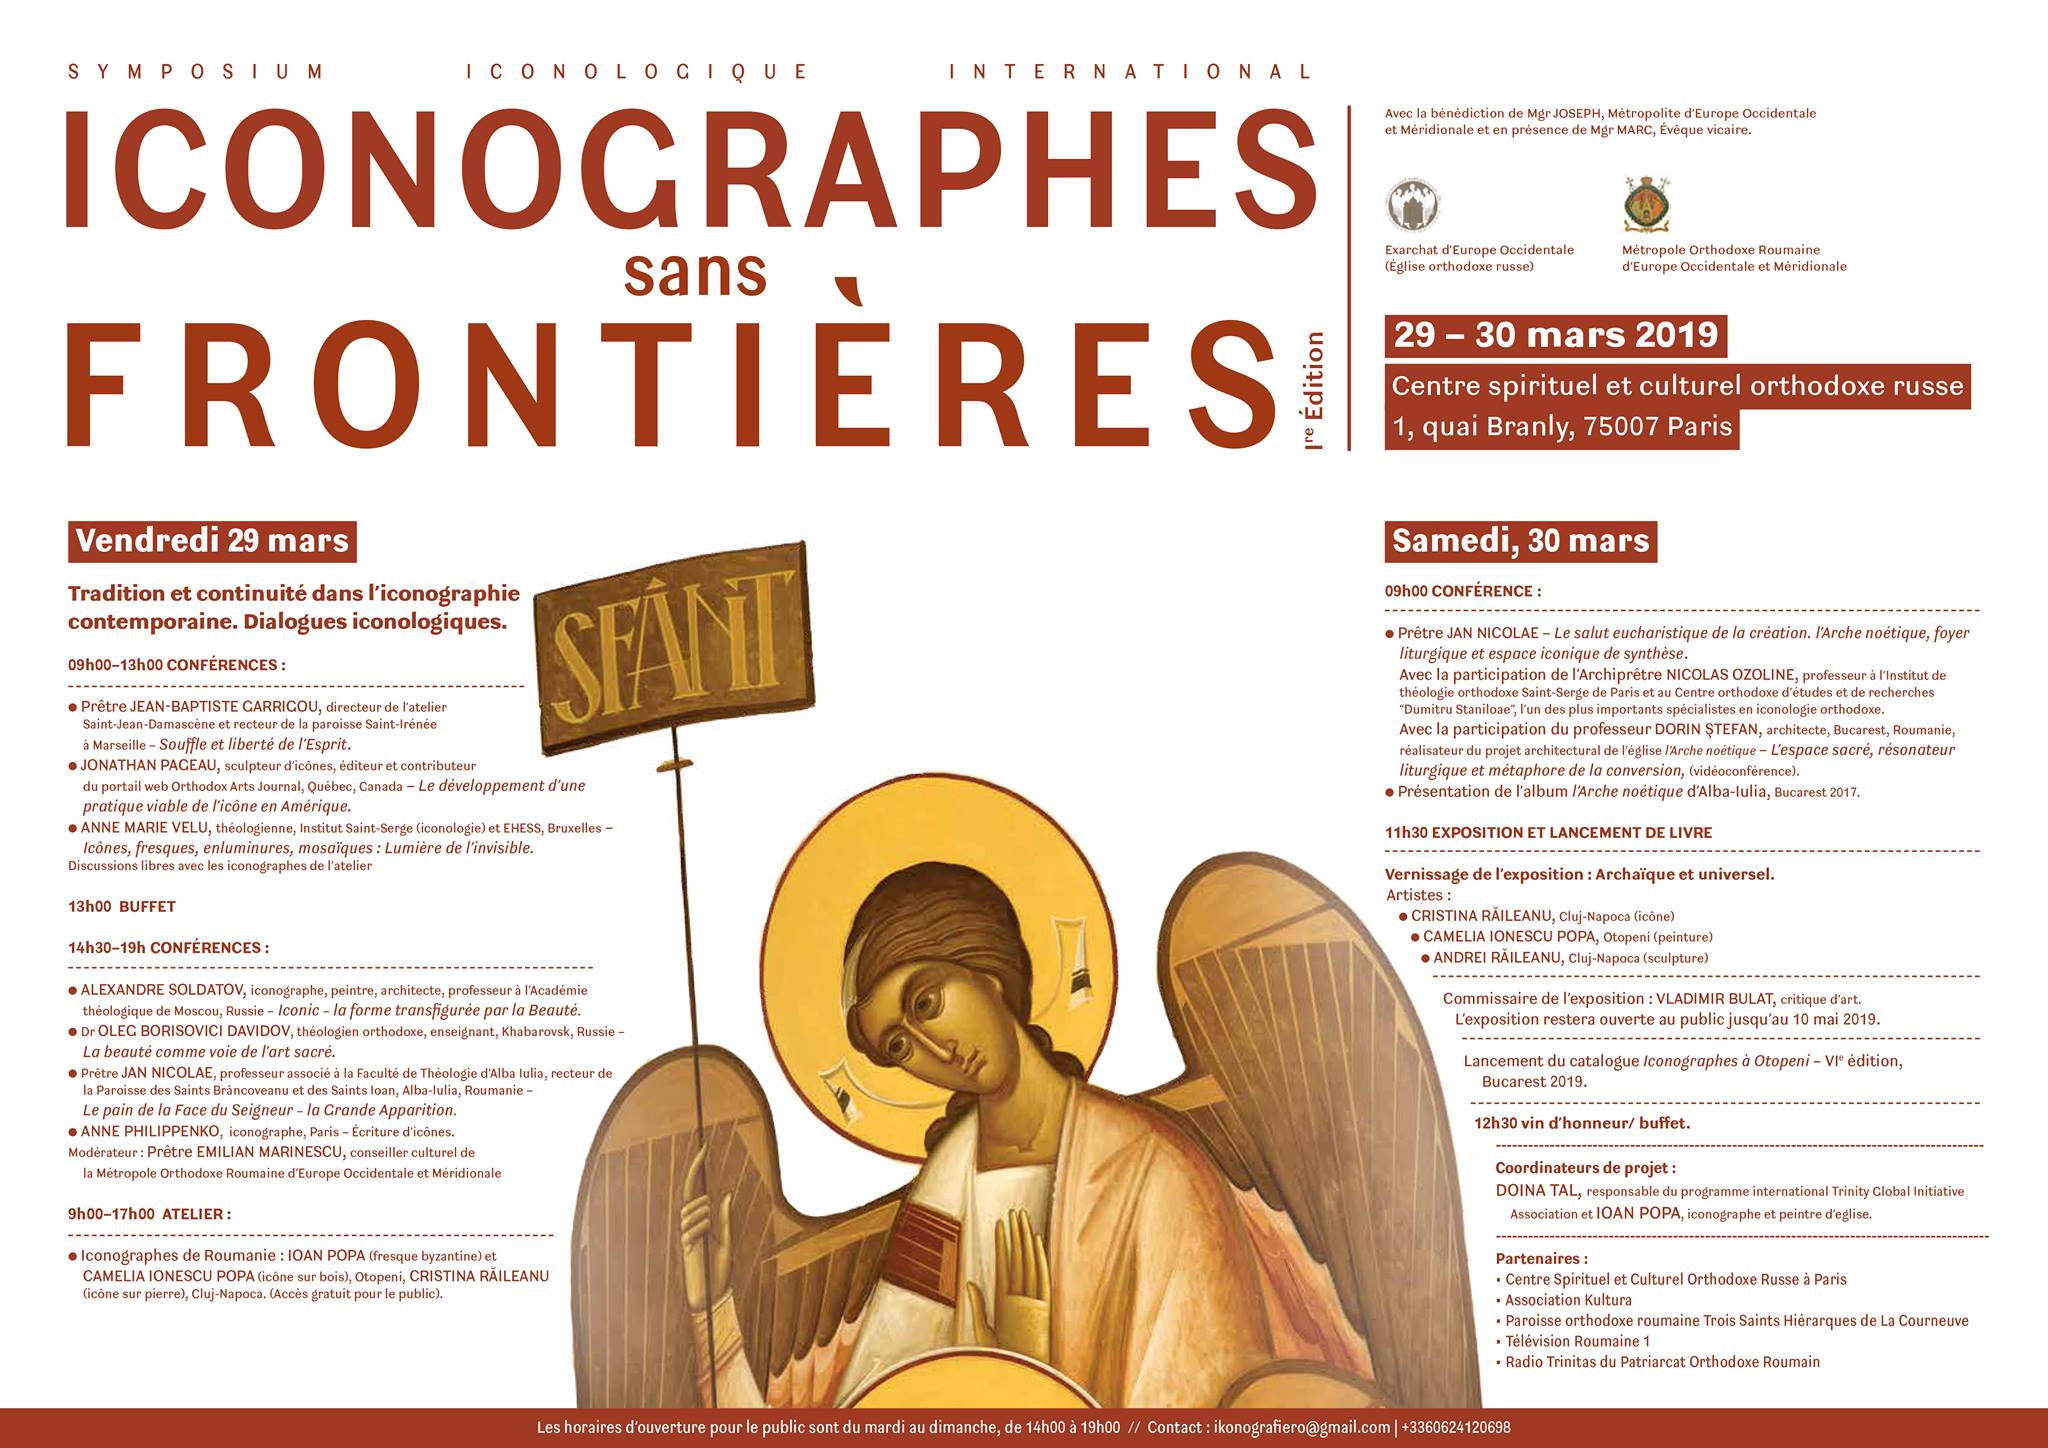 « iconographes sans frontières » : deux jours de conférences à paris